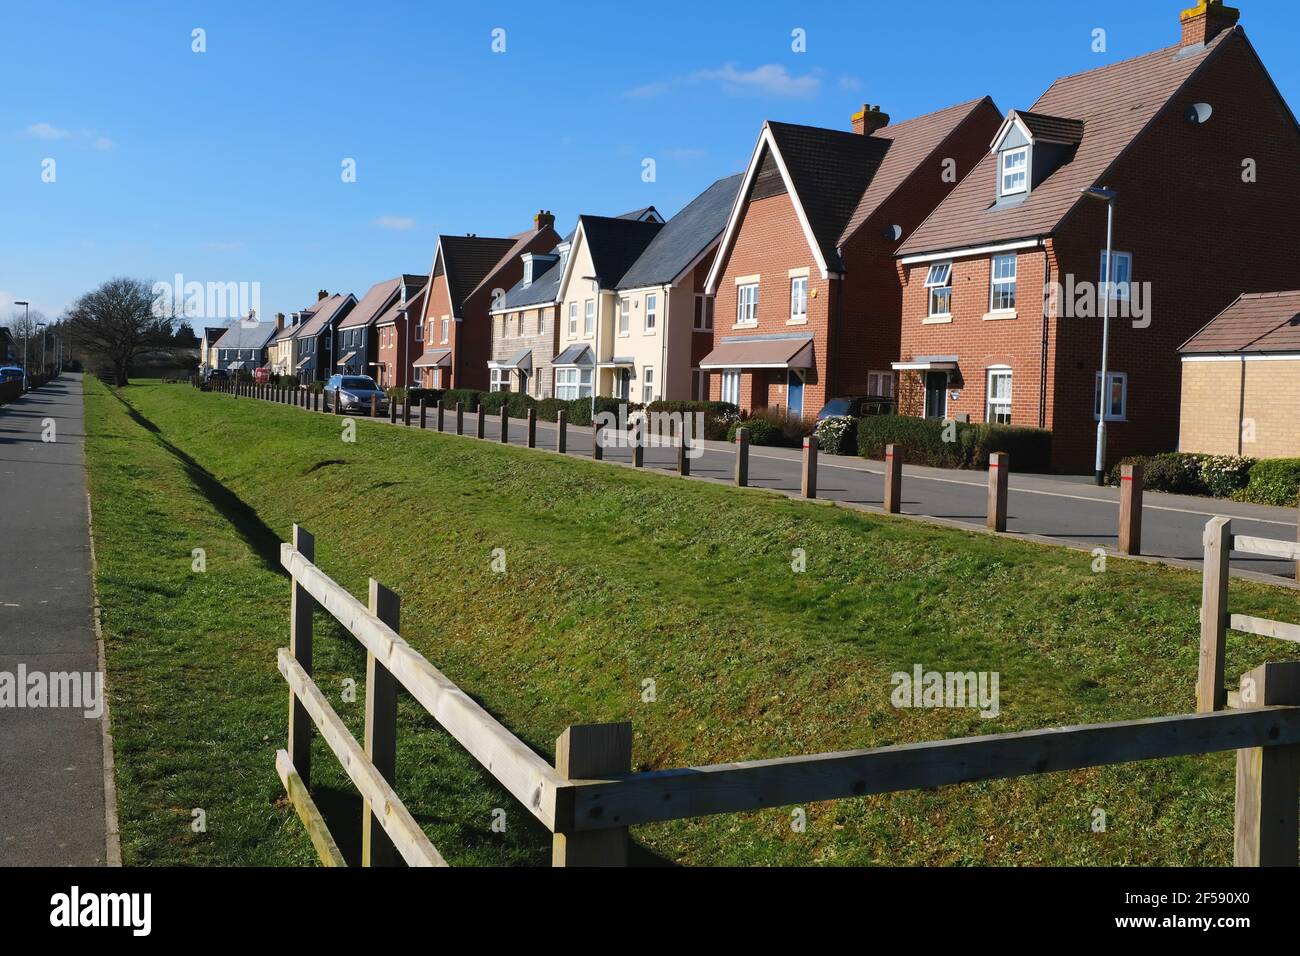 Nuevas casas en los Reyes alcanzan la finca Biggleswade, Bedfordshire, Inglaterra Foto de stock